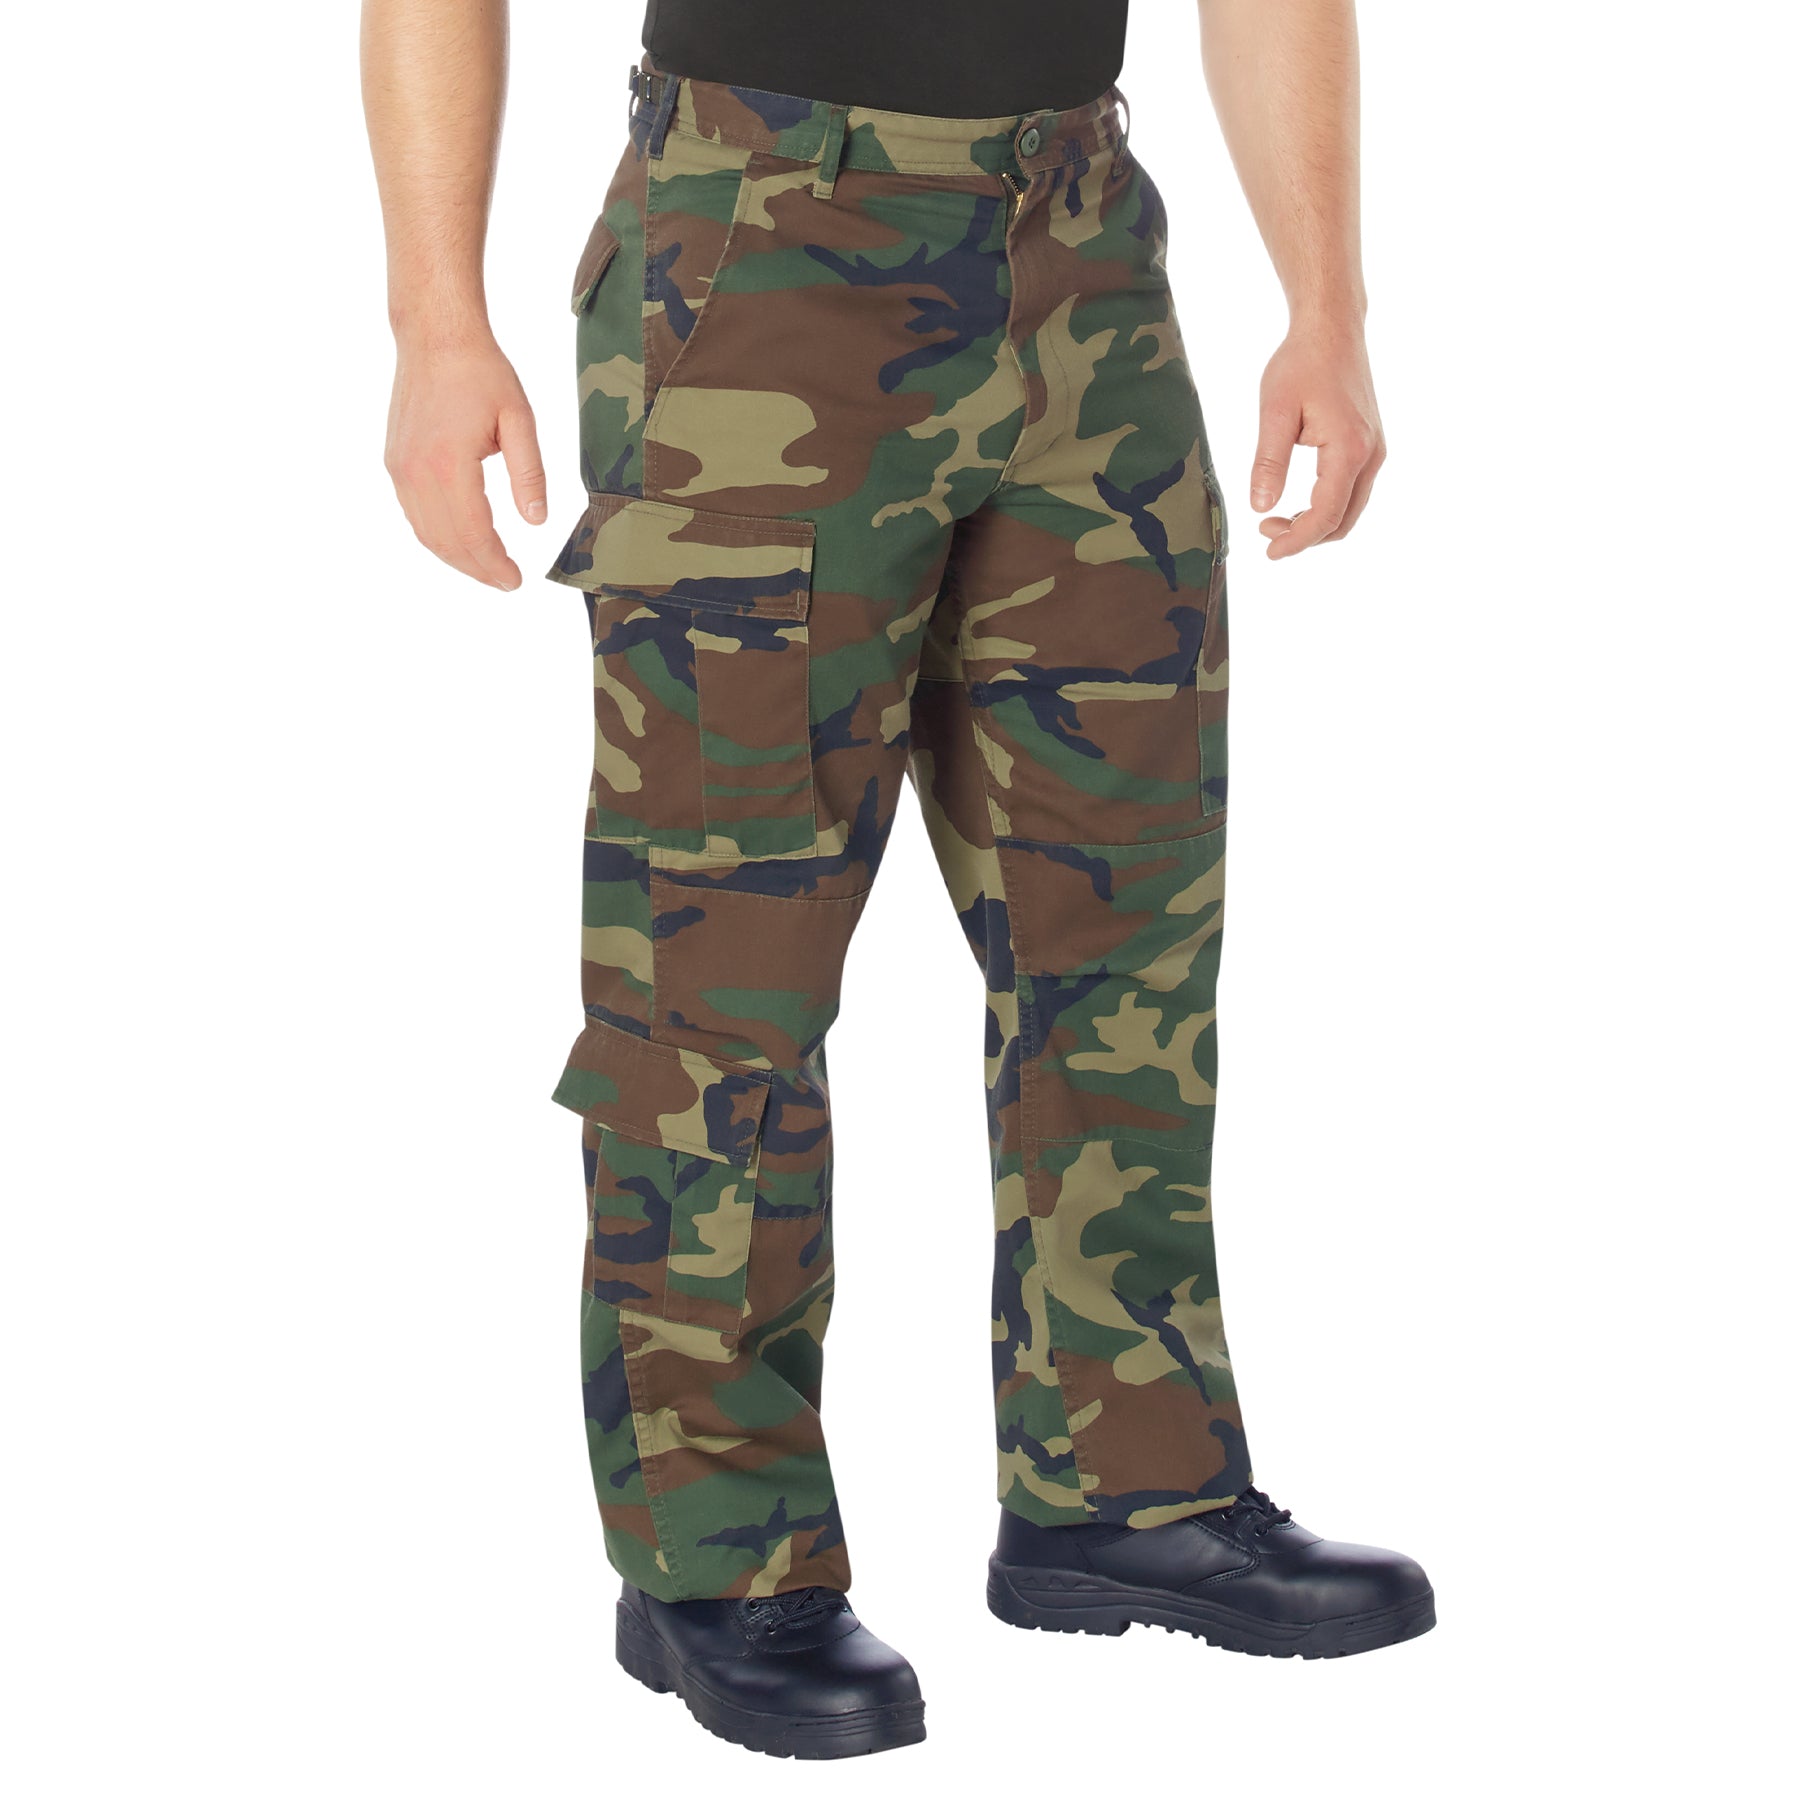 [Vintage Paratrooper] Camo Poly/Cotton Cargo Fatigue BDU Pants